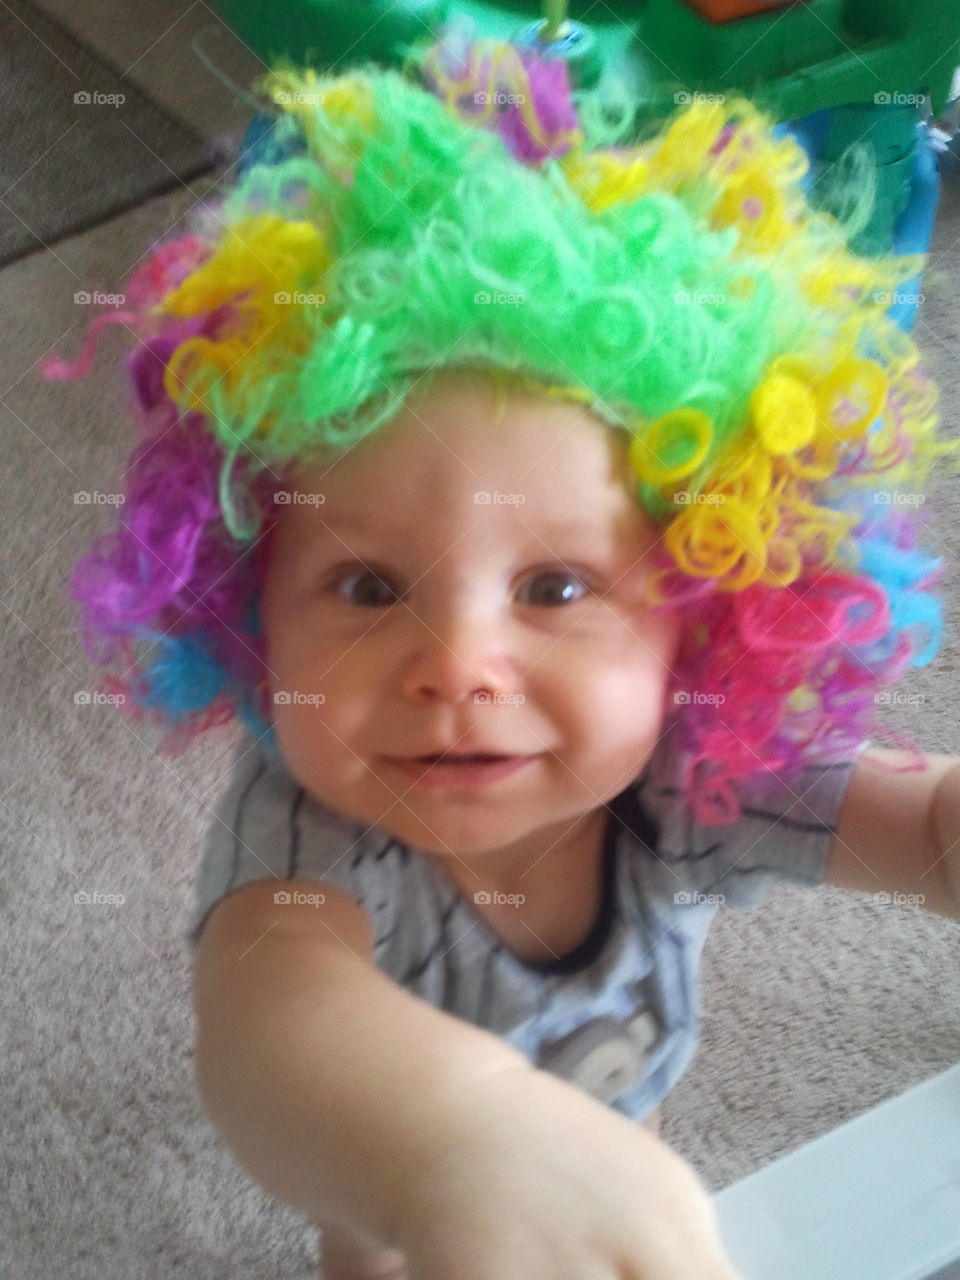 Clown wigs are so funny.